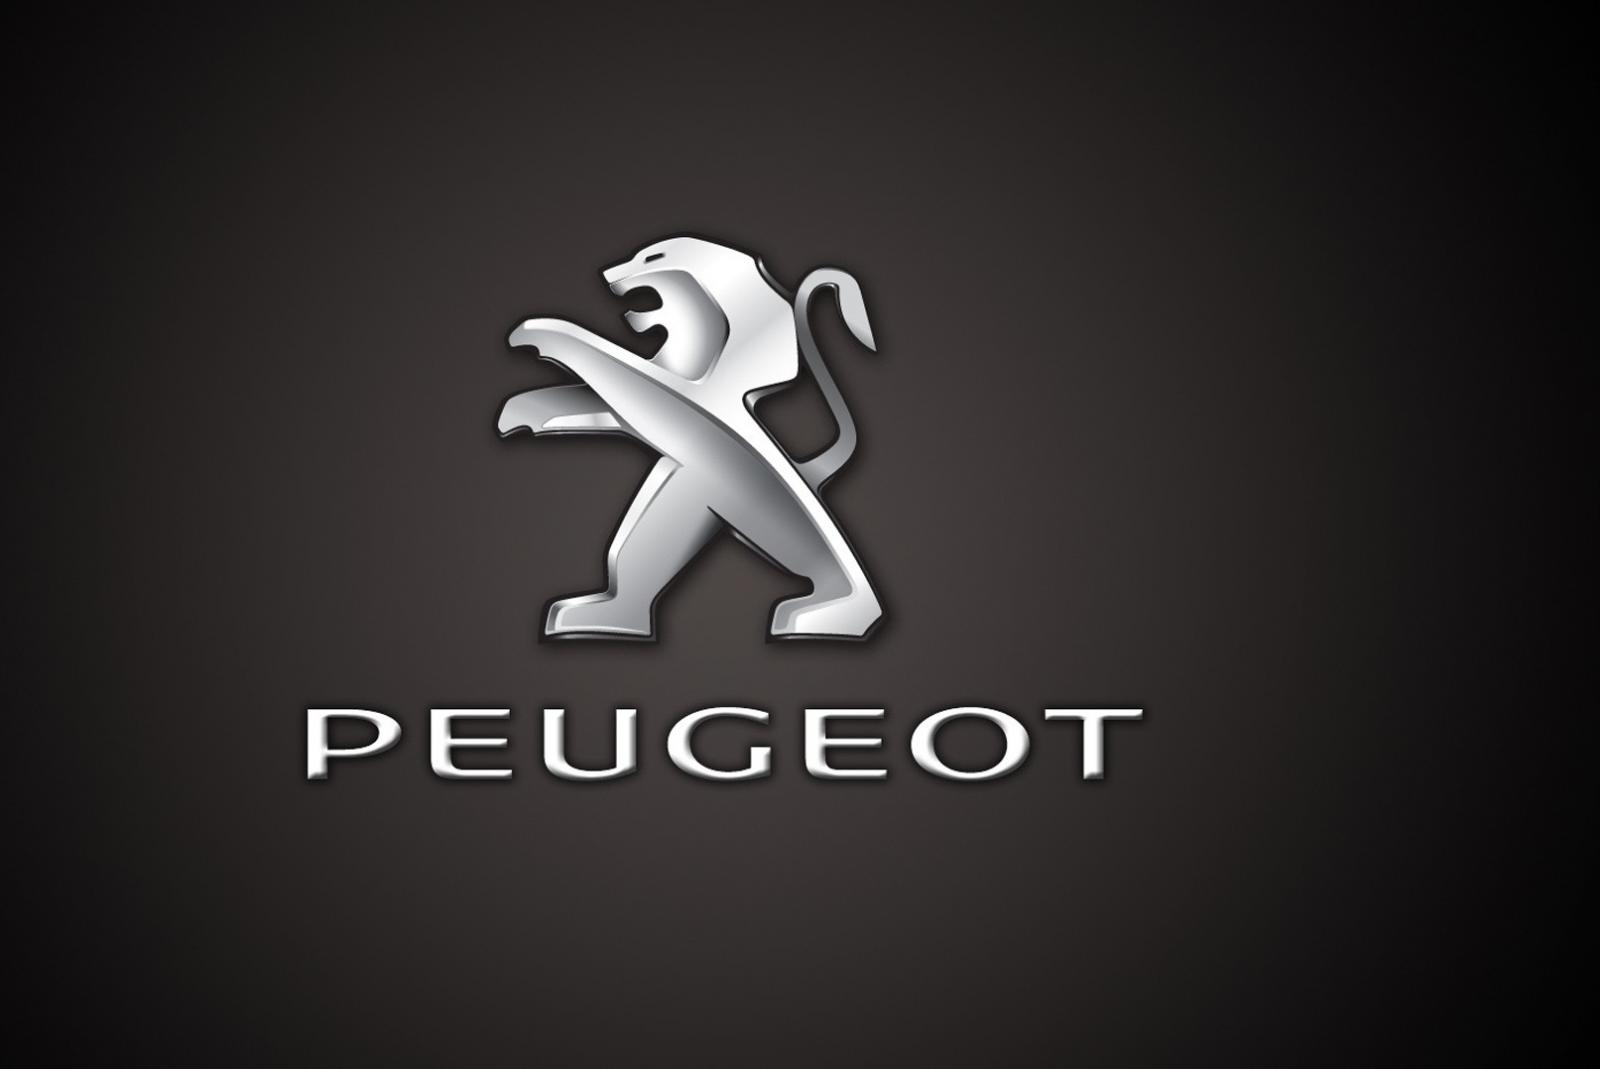 Hãng xe Peugeot đến từ Pháp là một trong những thương hiệu xe sang nổi tiếng nhất thế giới.